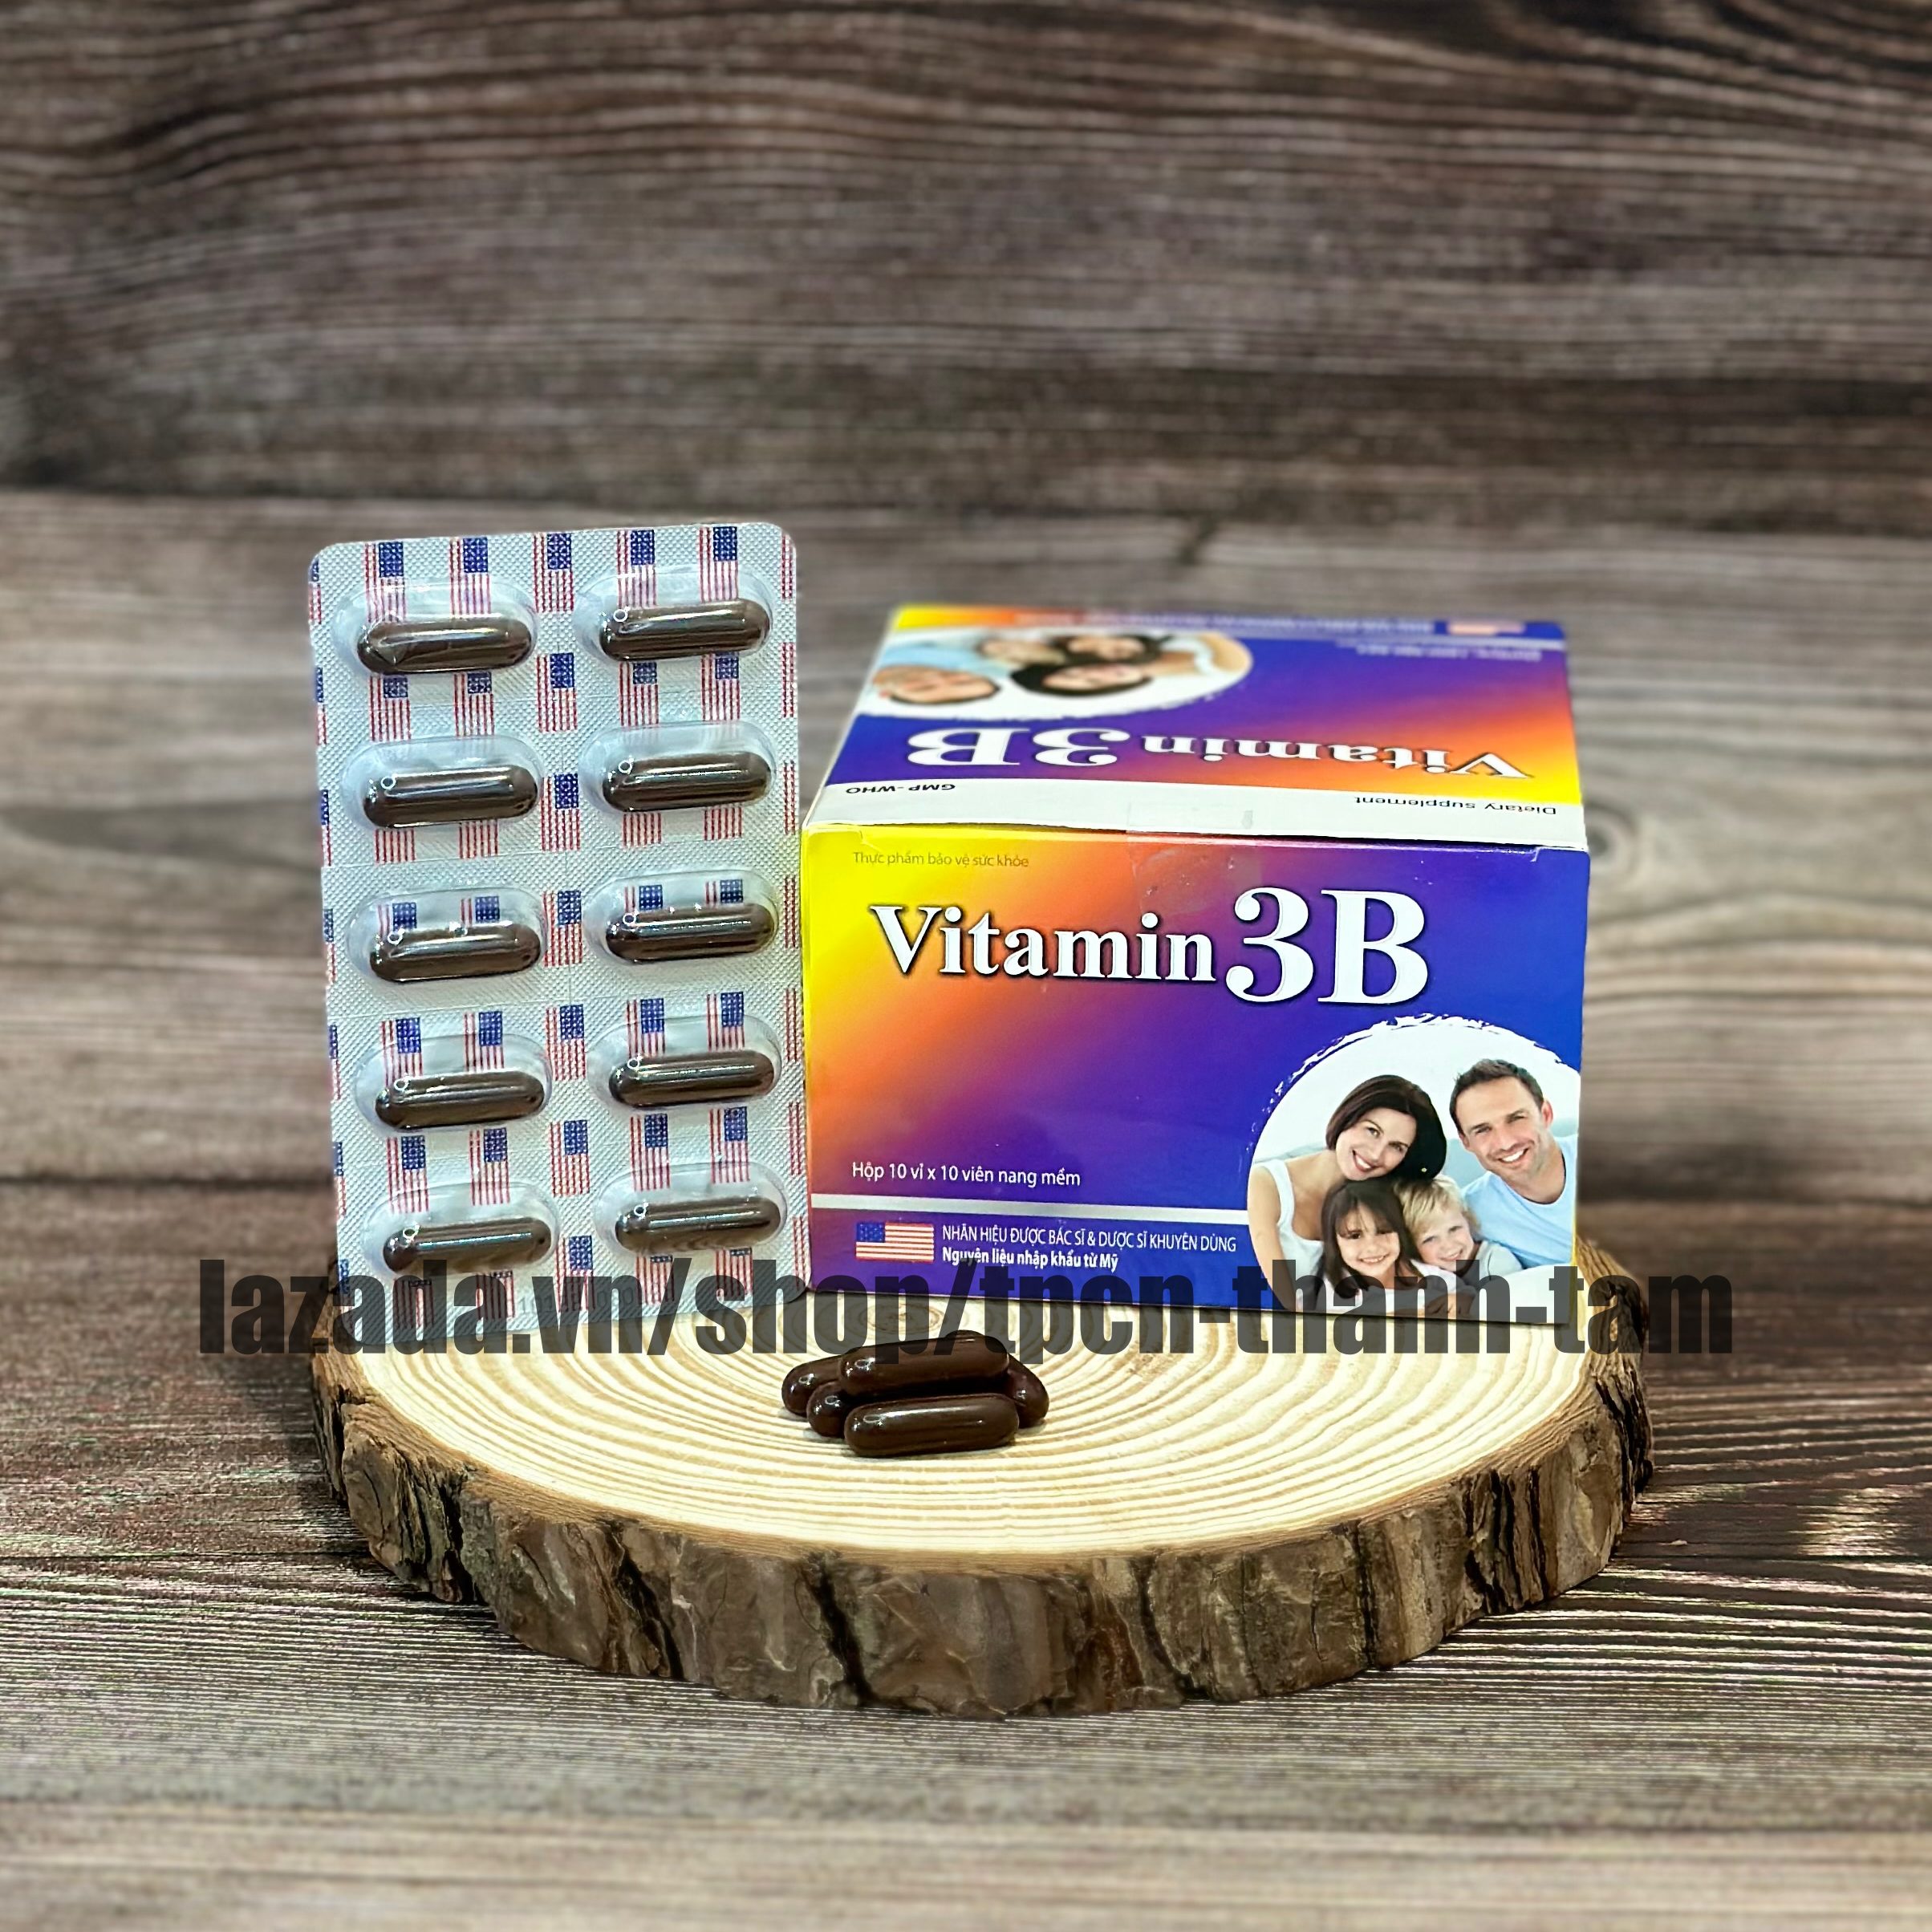 VITAMIN 3B bổ sung vitamin nhóm B hỗ trợ tăng sức đề kháng sức khỏe giảm suy nhược cơ thể - Hộp 100 viên